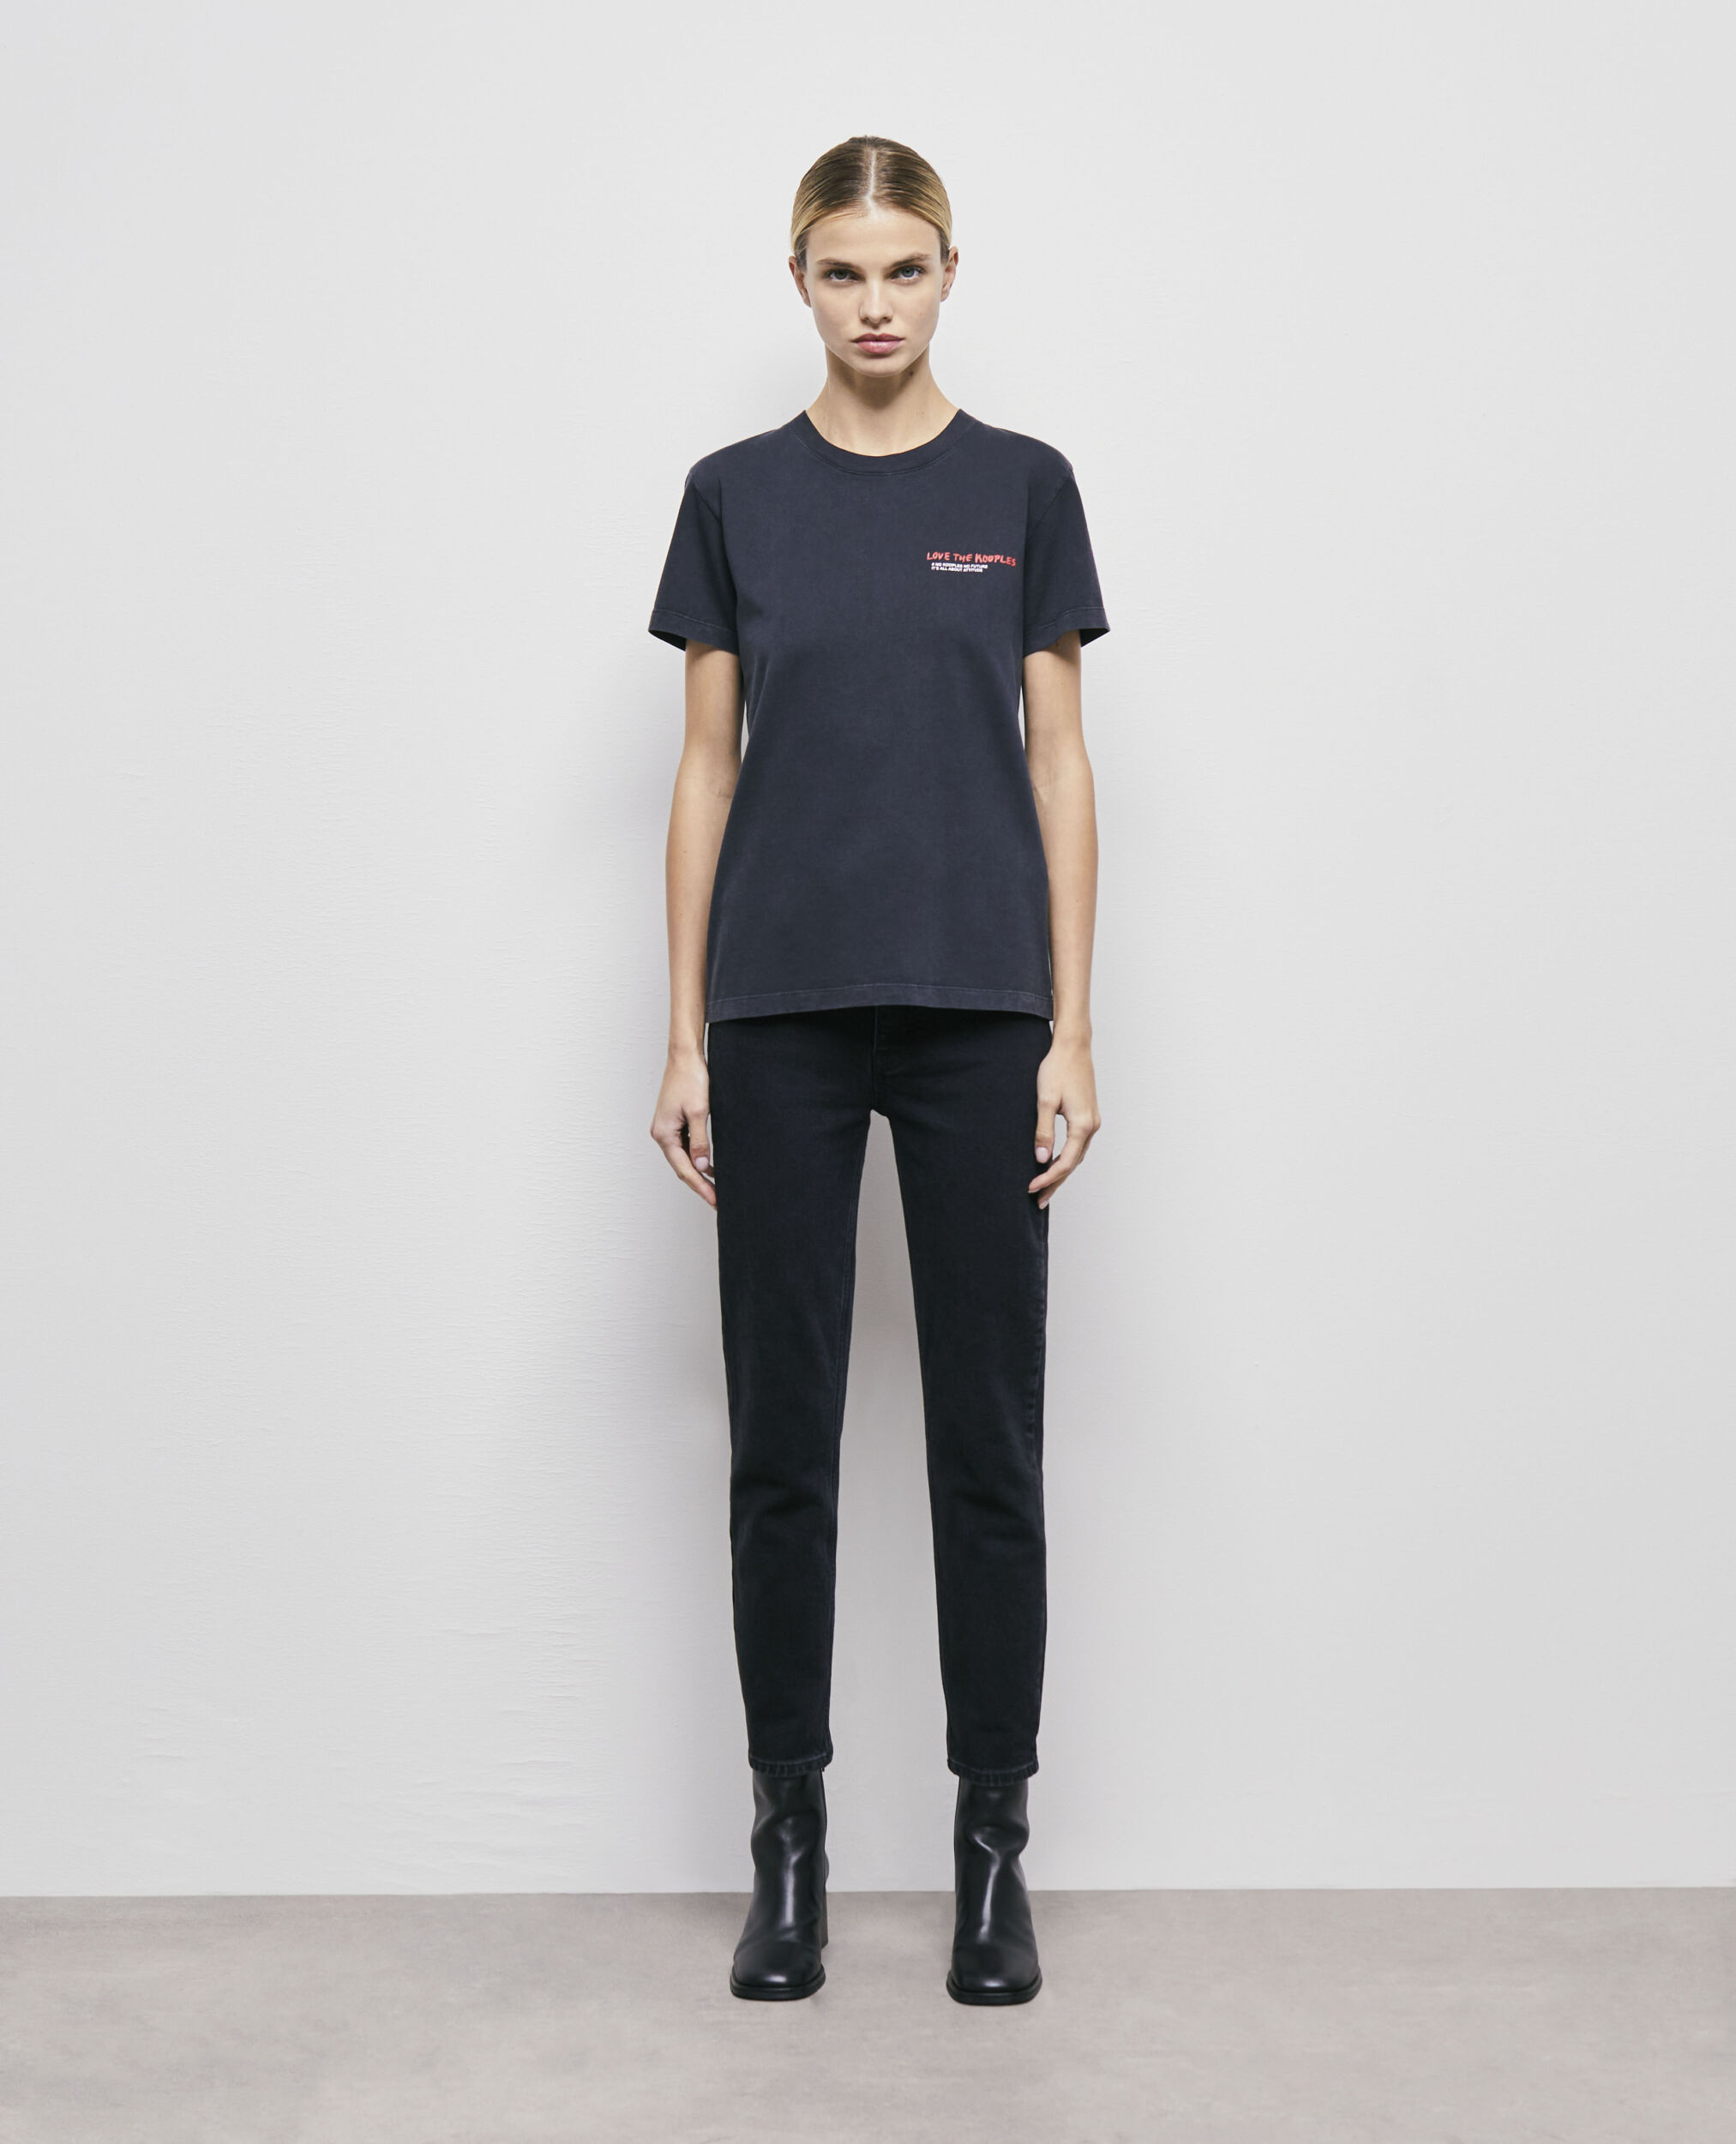 Schwarzes T-Shirt Damen „Love Kooples“, BLACK WASHED, hi-res image number null